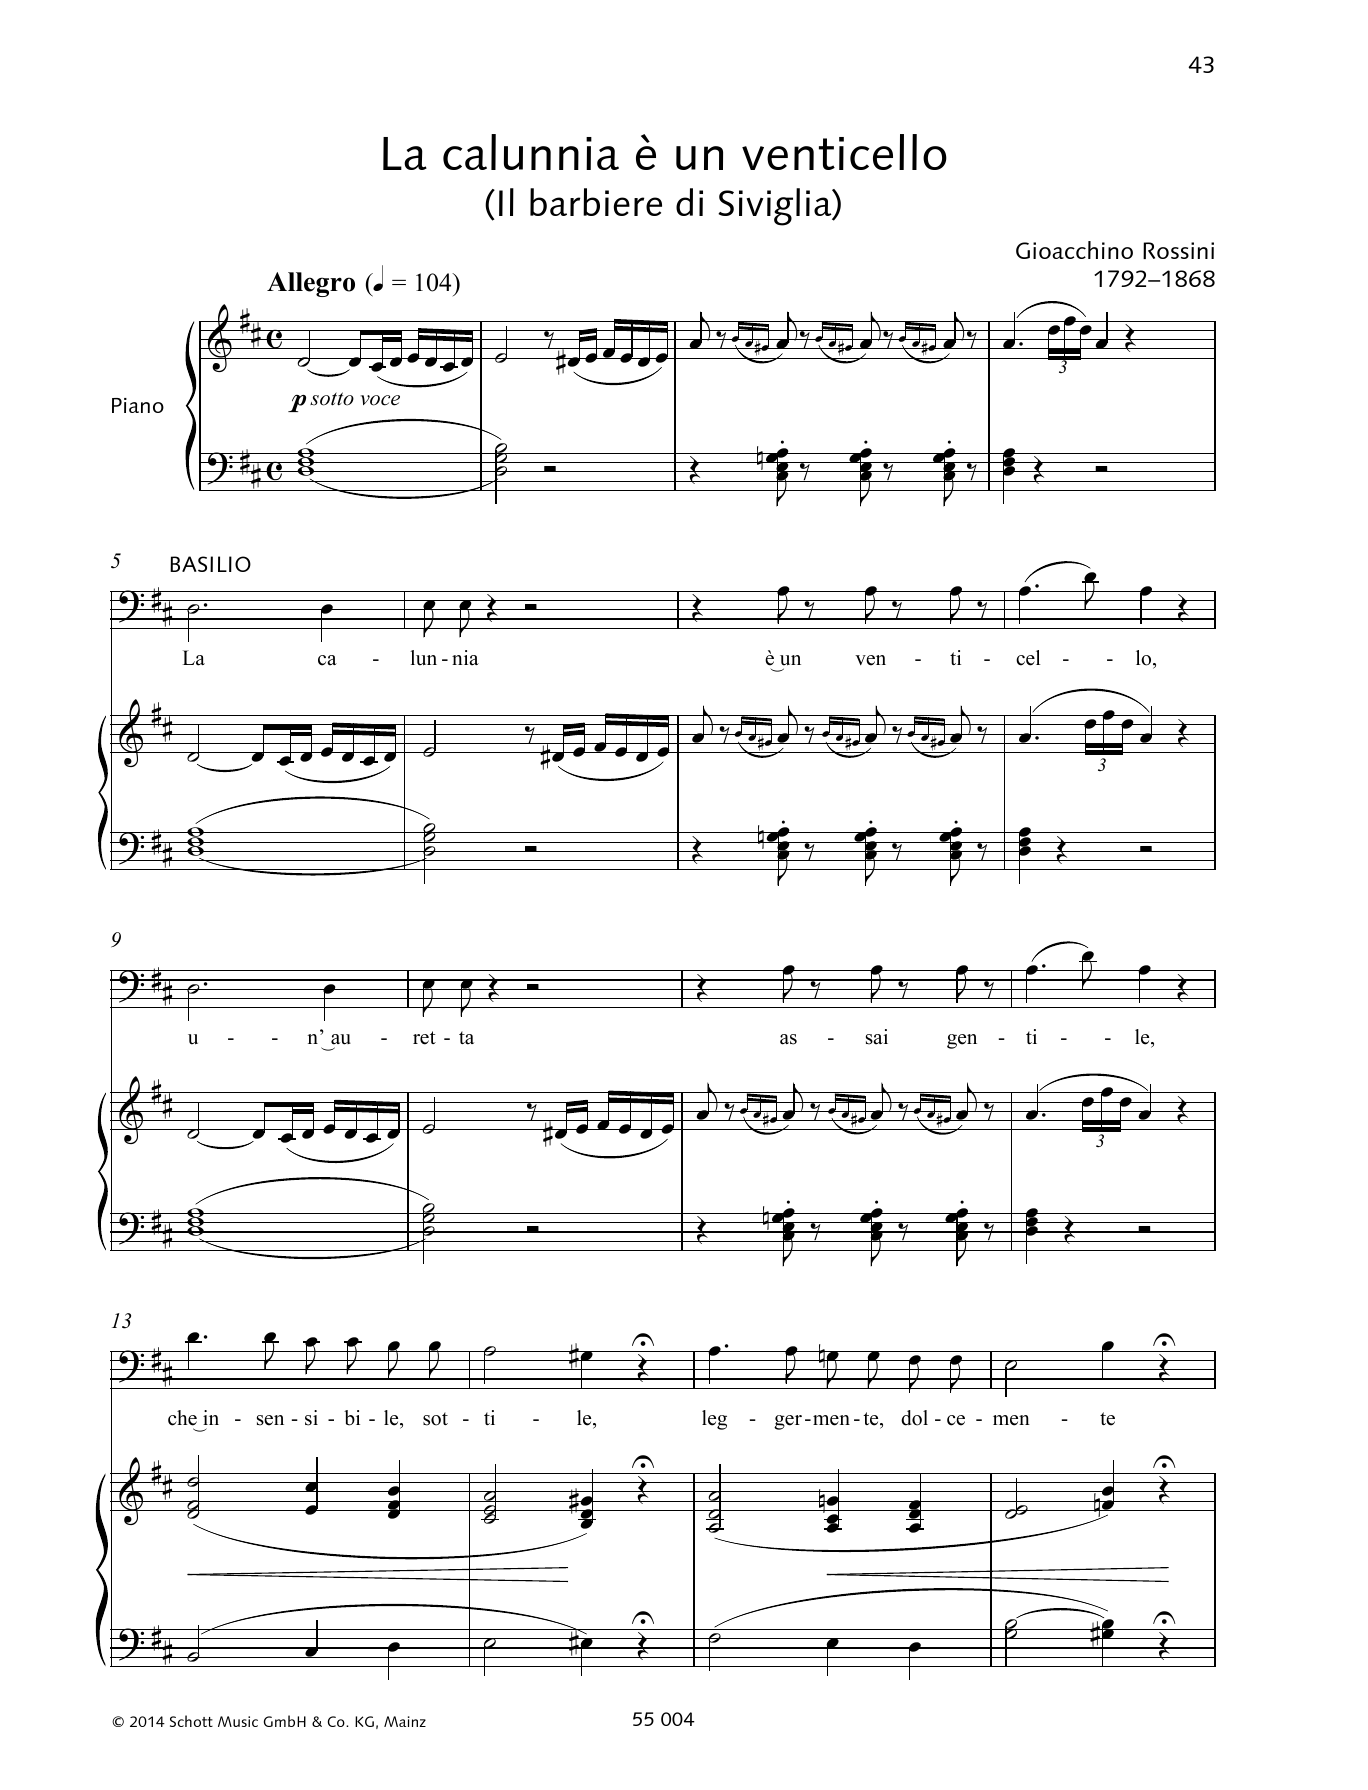 Gioacchino Rossini La calunnia è un venticello Sheet Music Notes & Chords for Piano & Vocal - Download or Print PDF